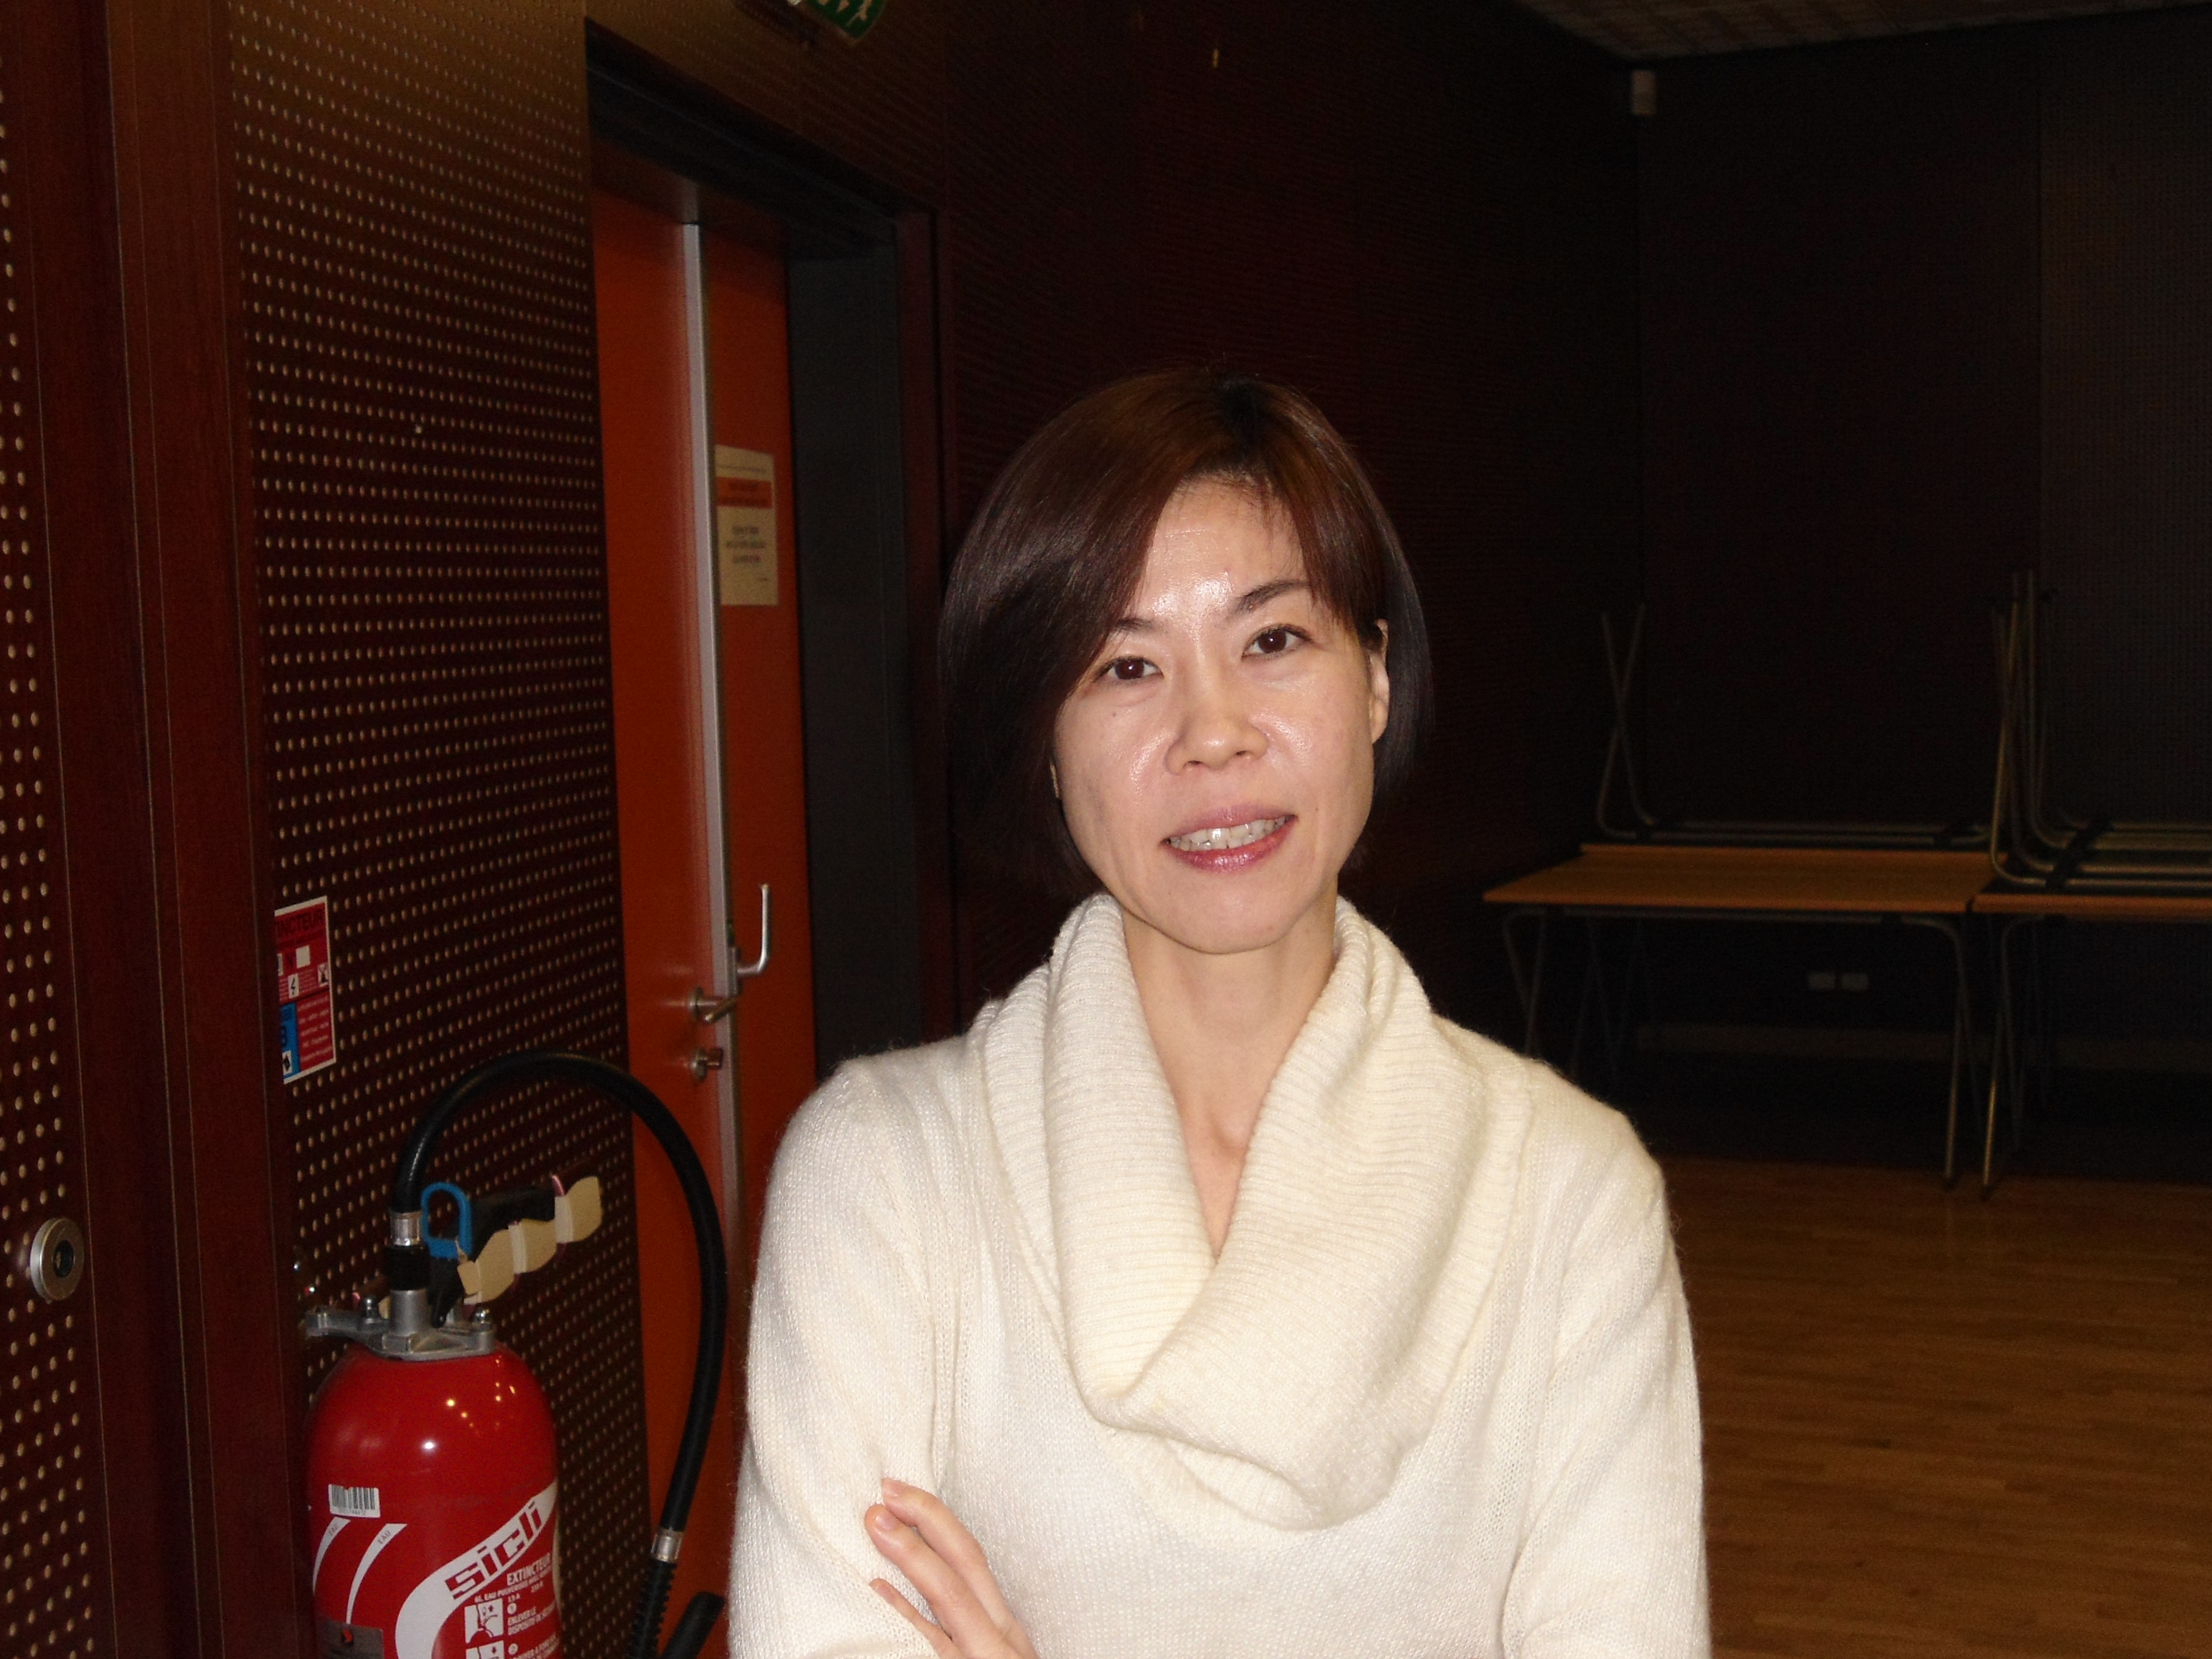 Etsuko Shoji